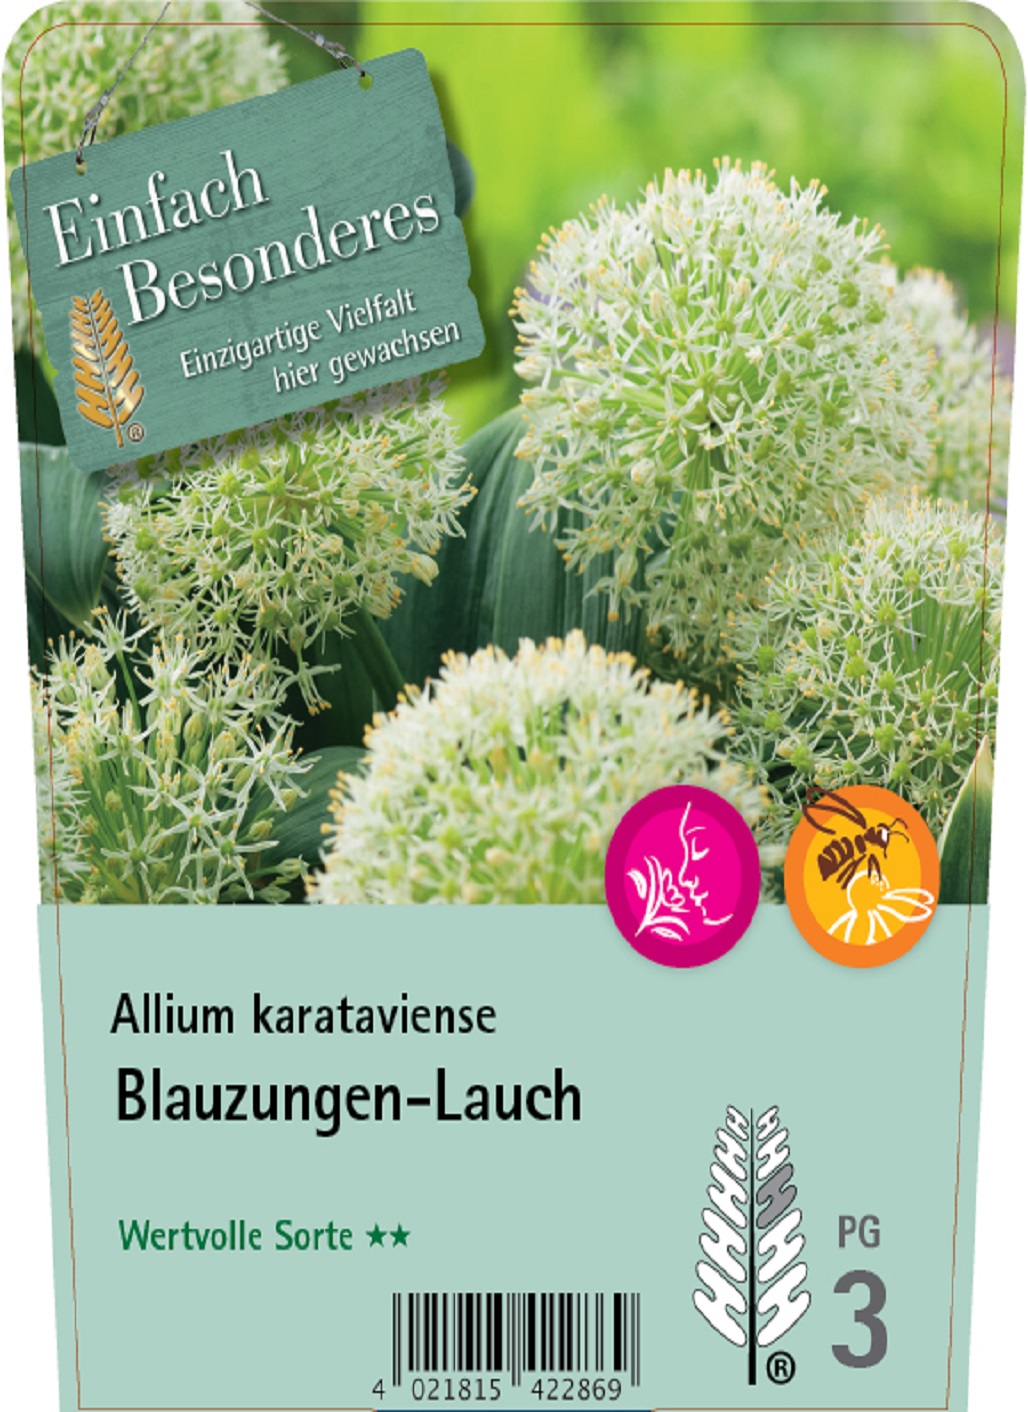 Blauzungen-Lauch - Allium karataviense, C2